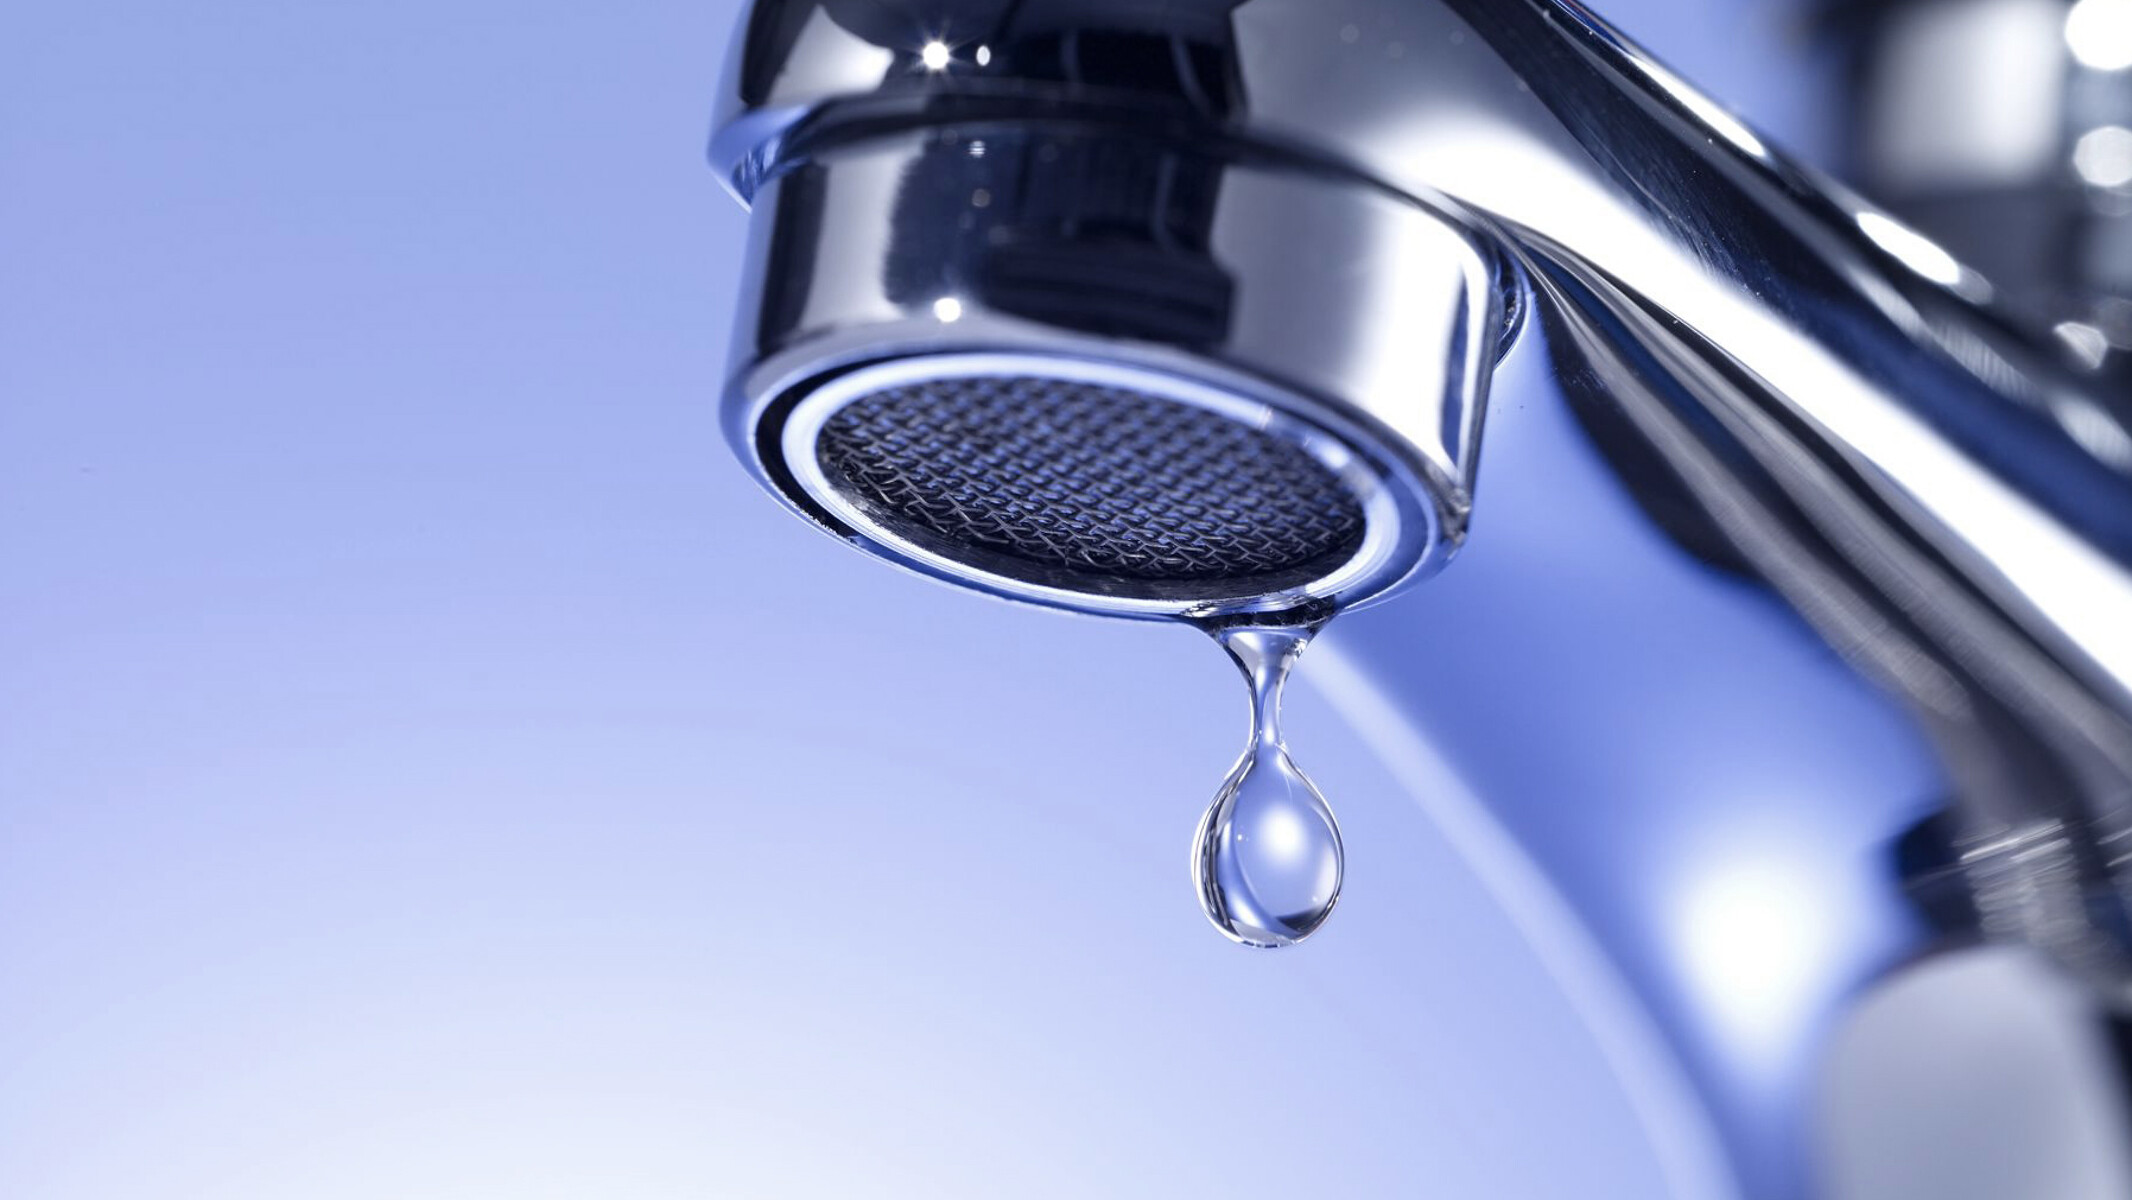 ก๊อกน้ำที่มีน้ำหยด เทคโนโลยีการจ่ายน้ำจากเคเอสบีครอบคลุมตั้งแต่น้ำการจ่ายน้ำในครัวเรือนไปจนถึงระบบเพิ่มแรงดันที่ซับซ้อน